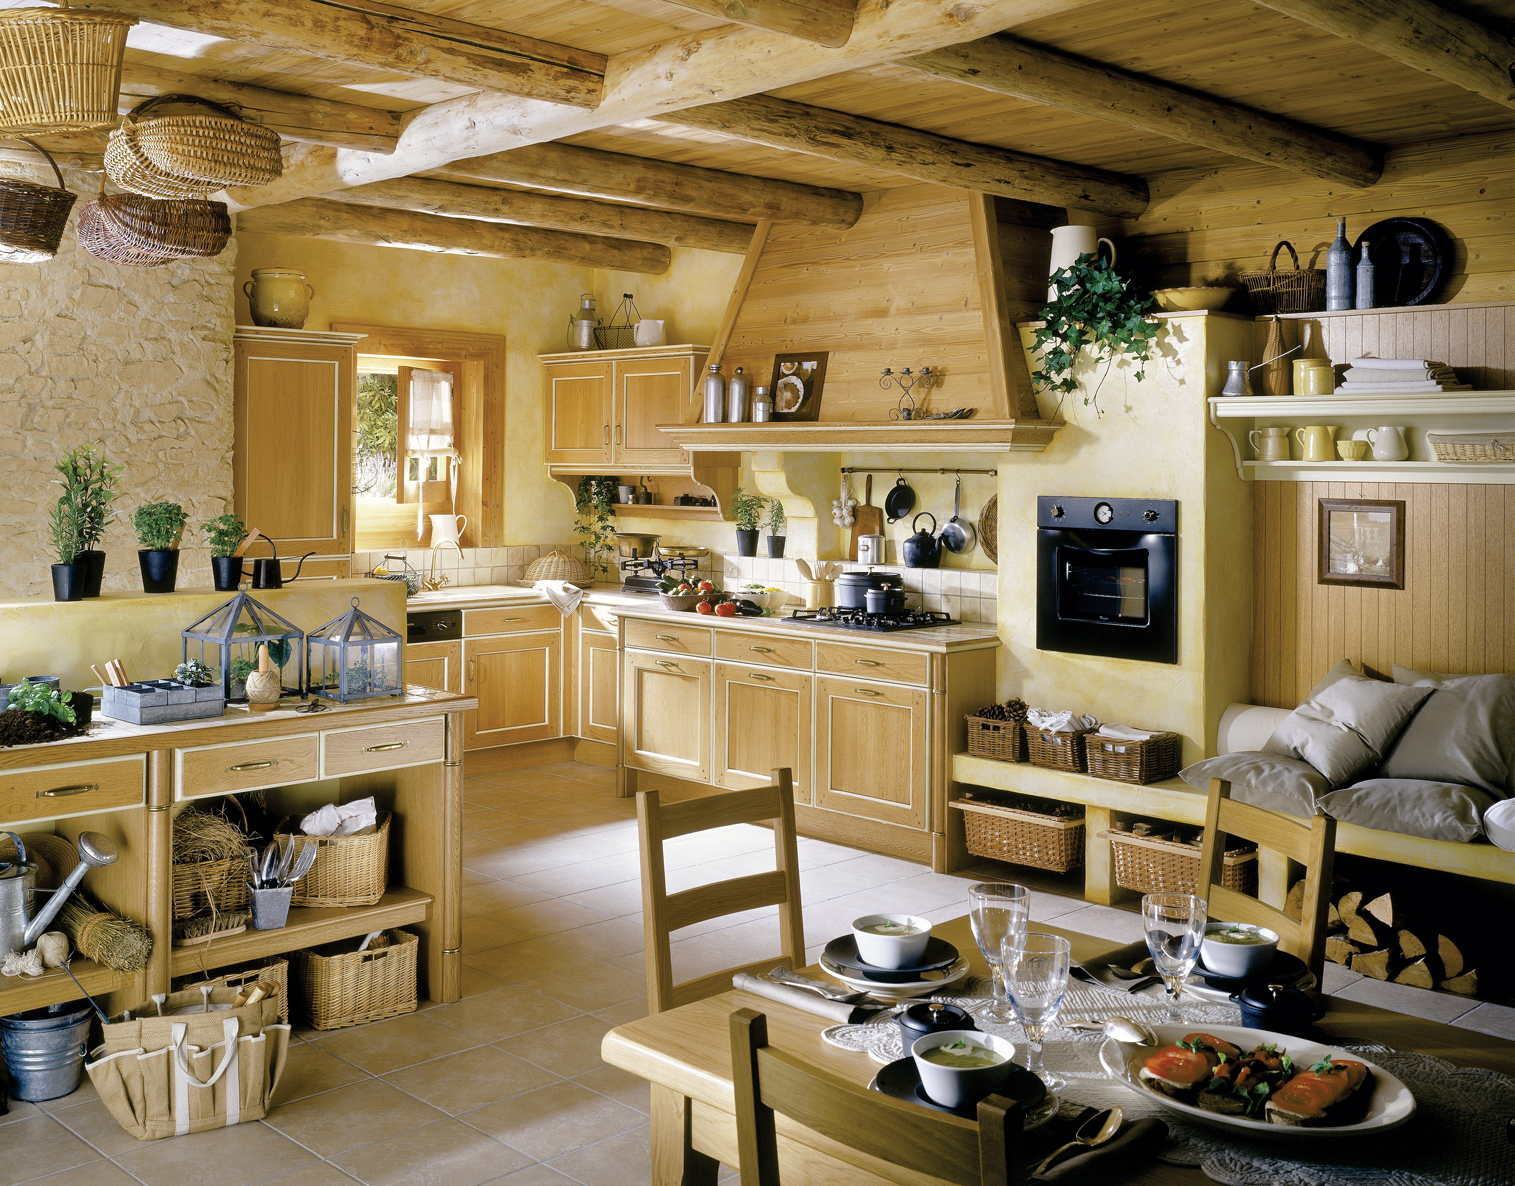 інтер'єр кухні-вітальні в дерев'яному будинку